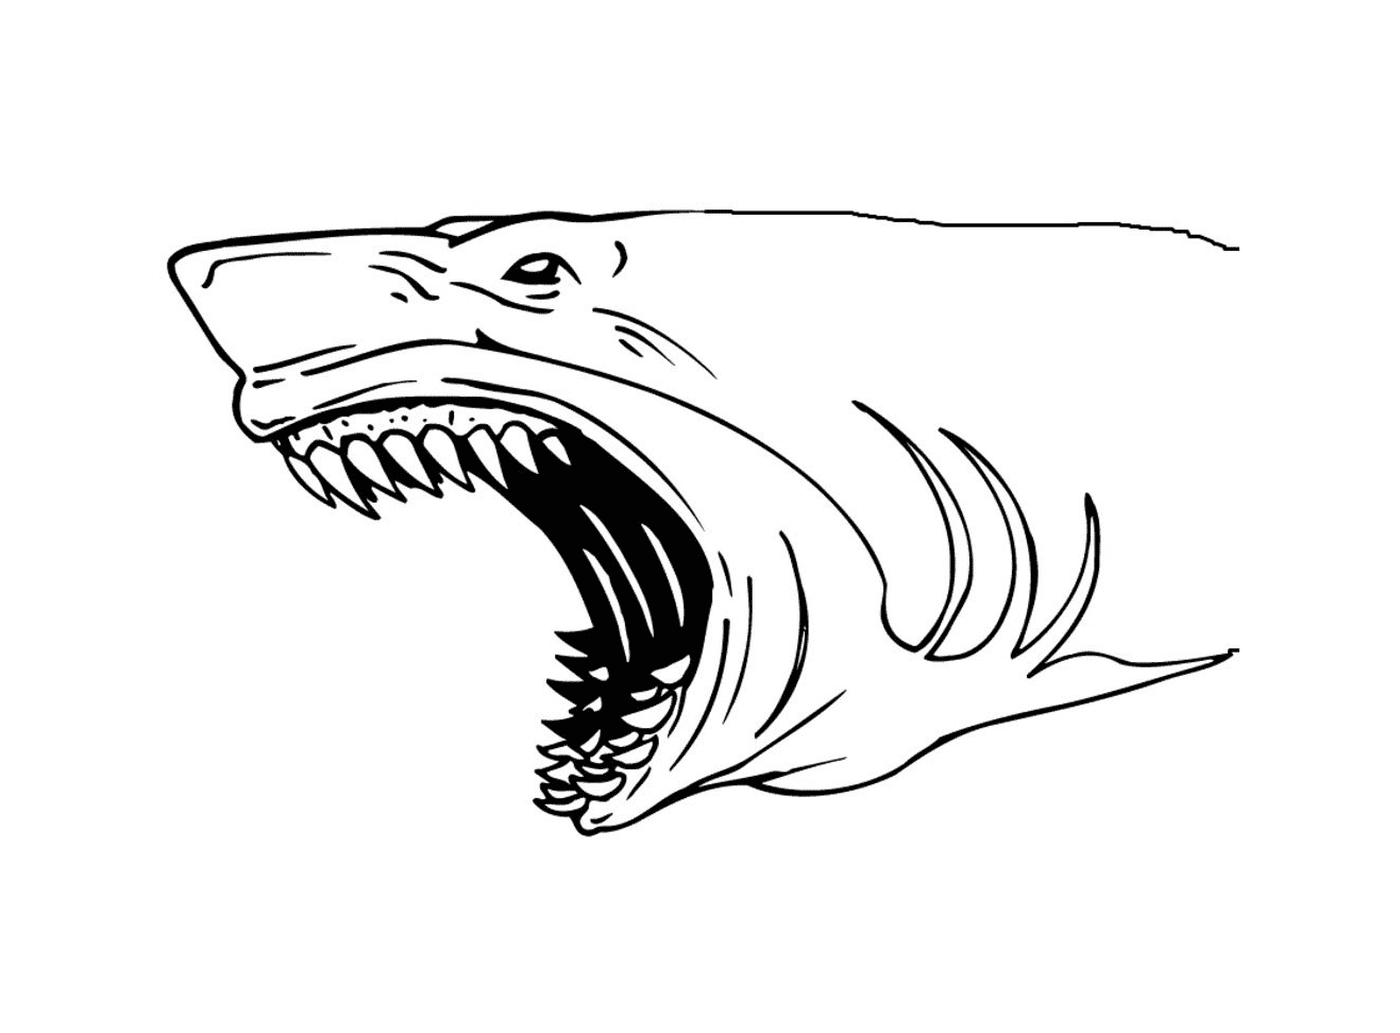  Tubarão com dentes grandes 